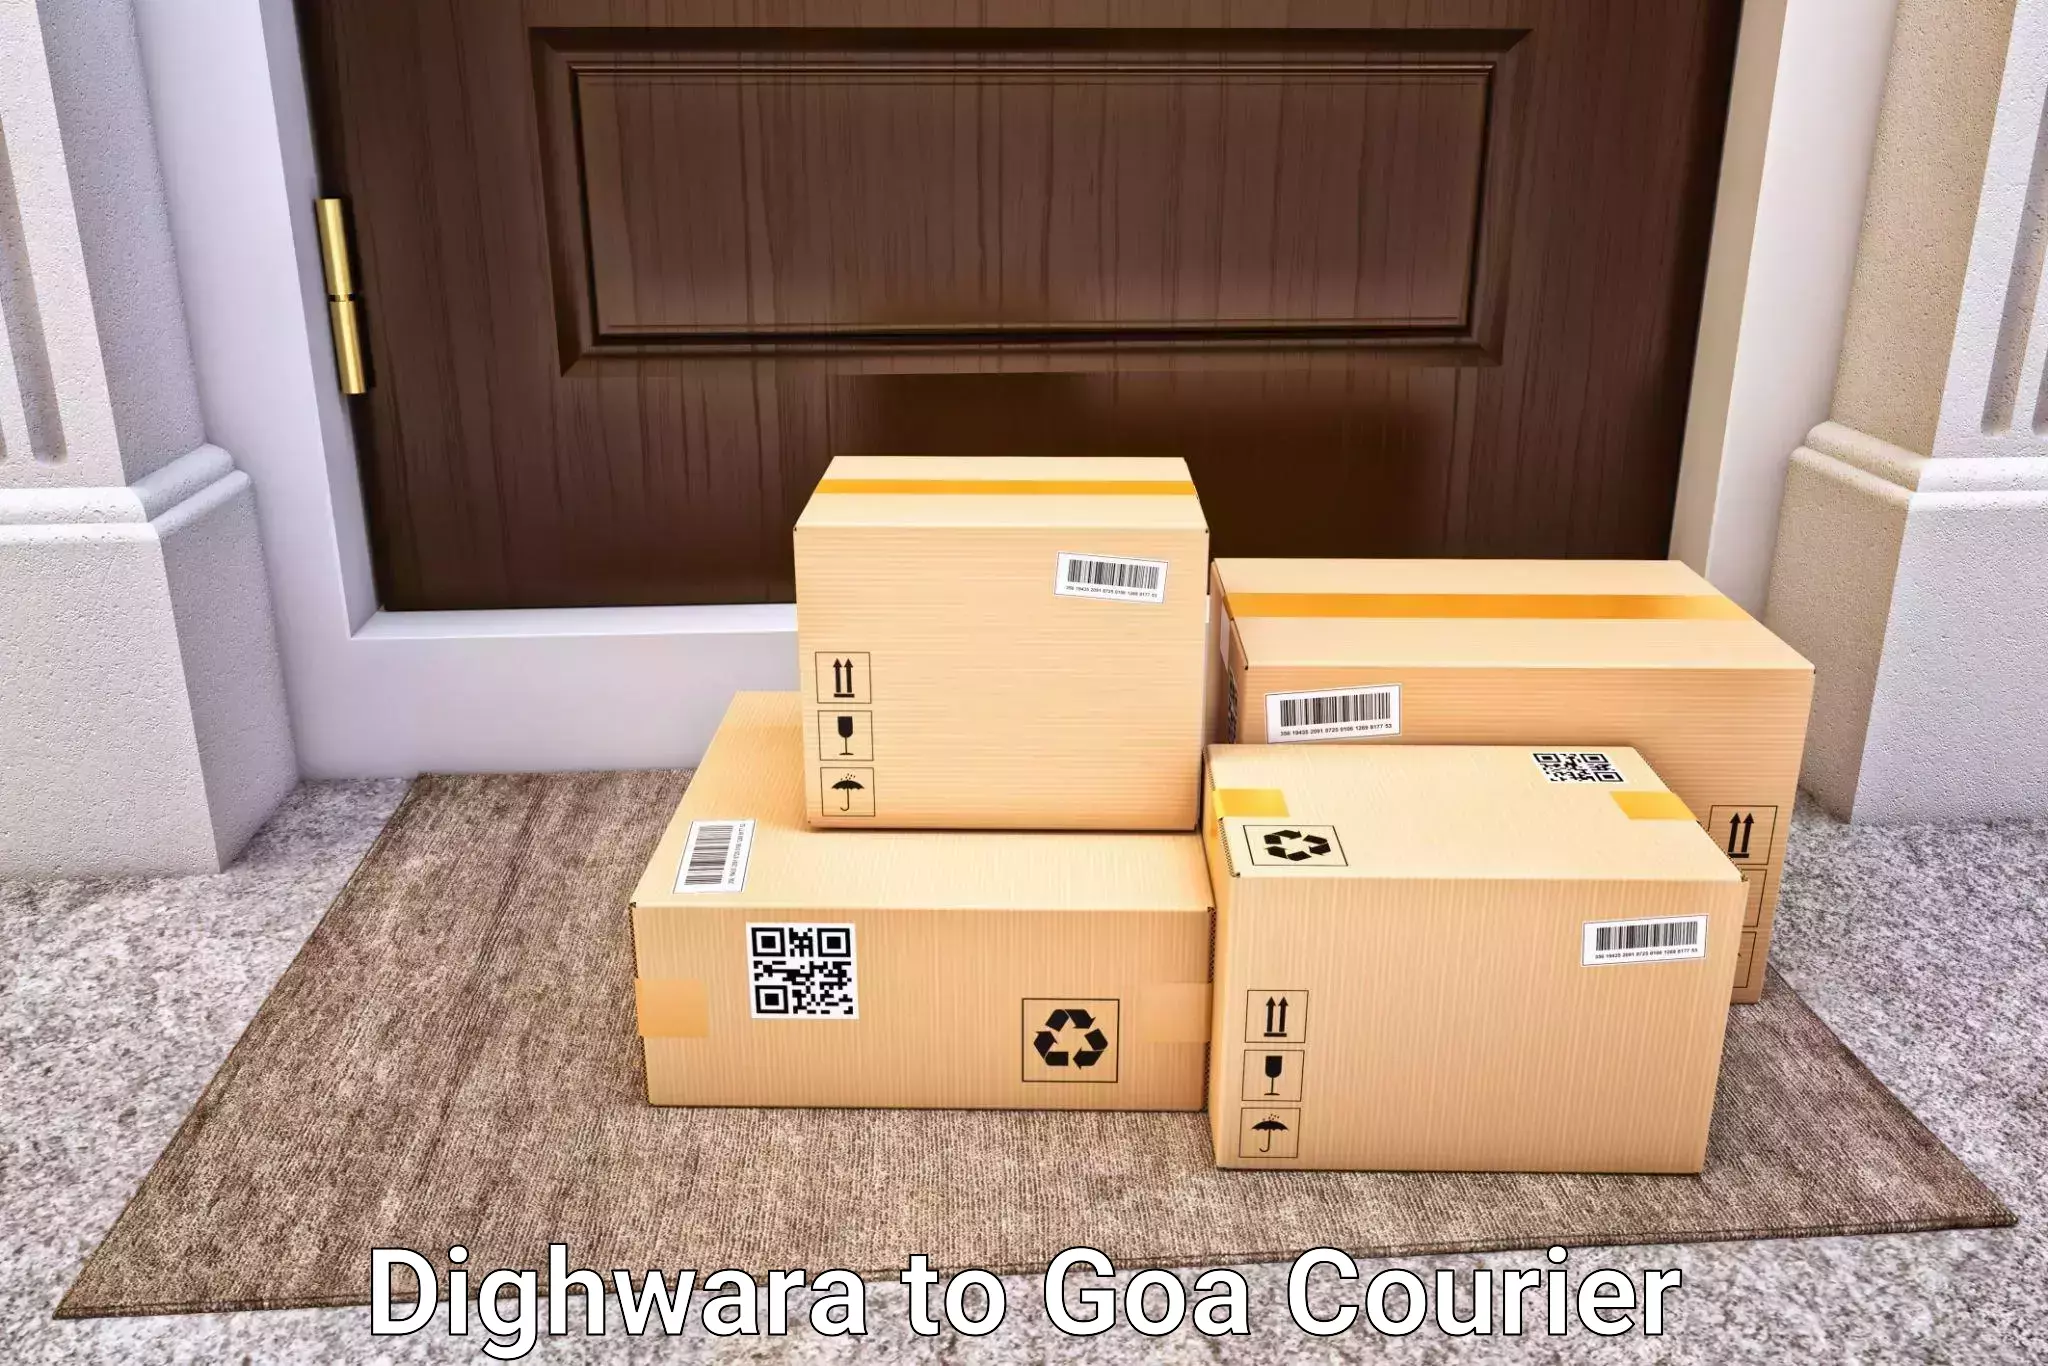 Luggage shipment strategy in Dighwara to Vasco da Gama